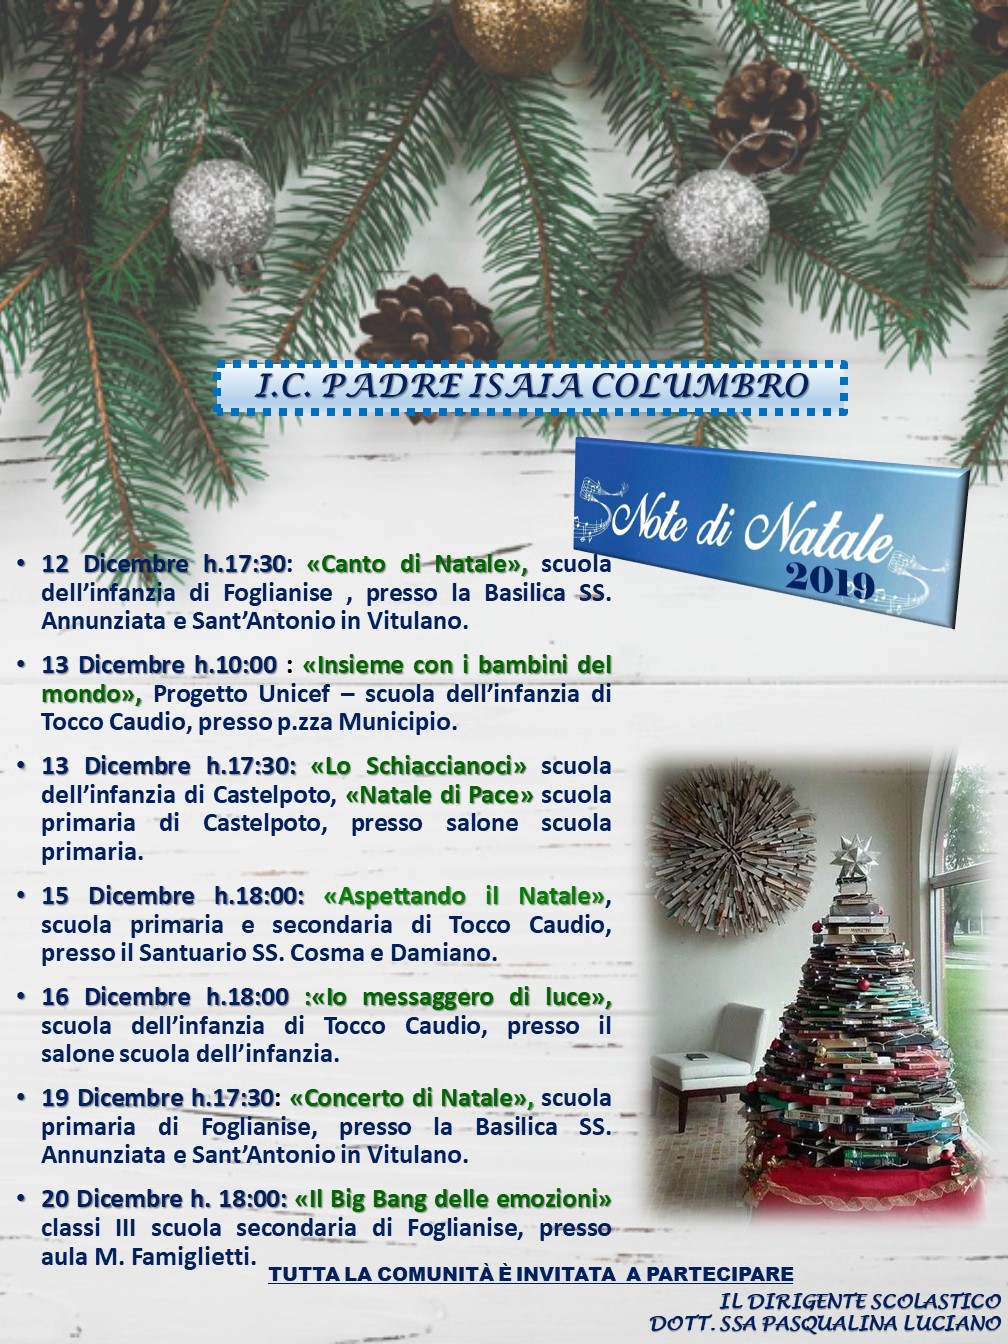 Poesie Di Natale In Napoletano Per La Scuola Dell Infanzia.Eventi E Attivita Didattiche Website Www Icpadreisaia Edu It